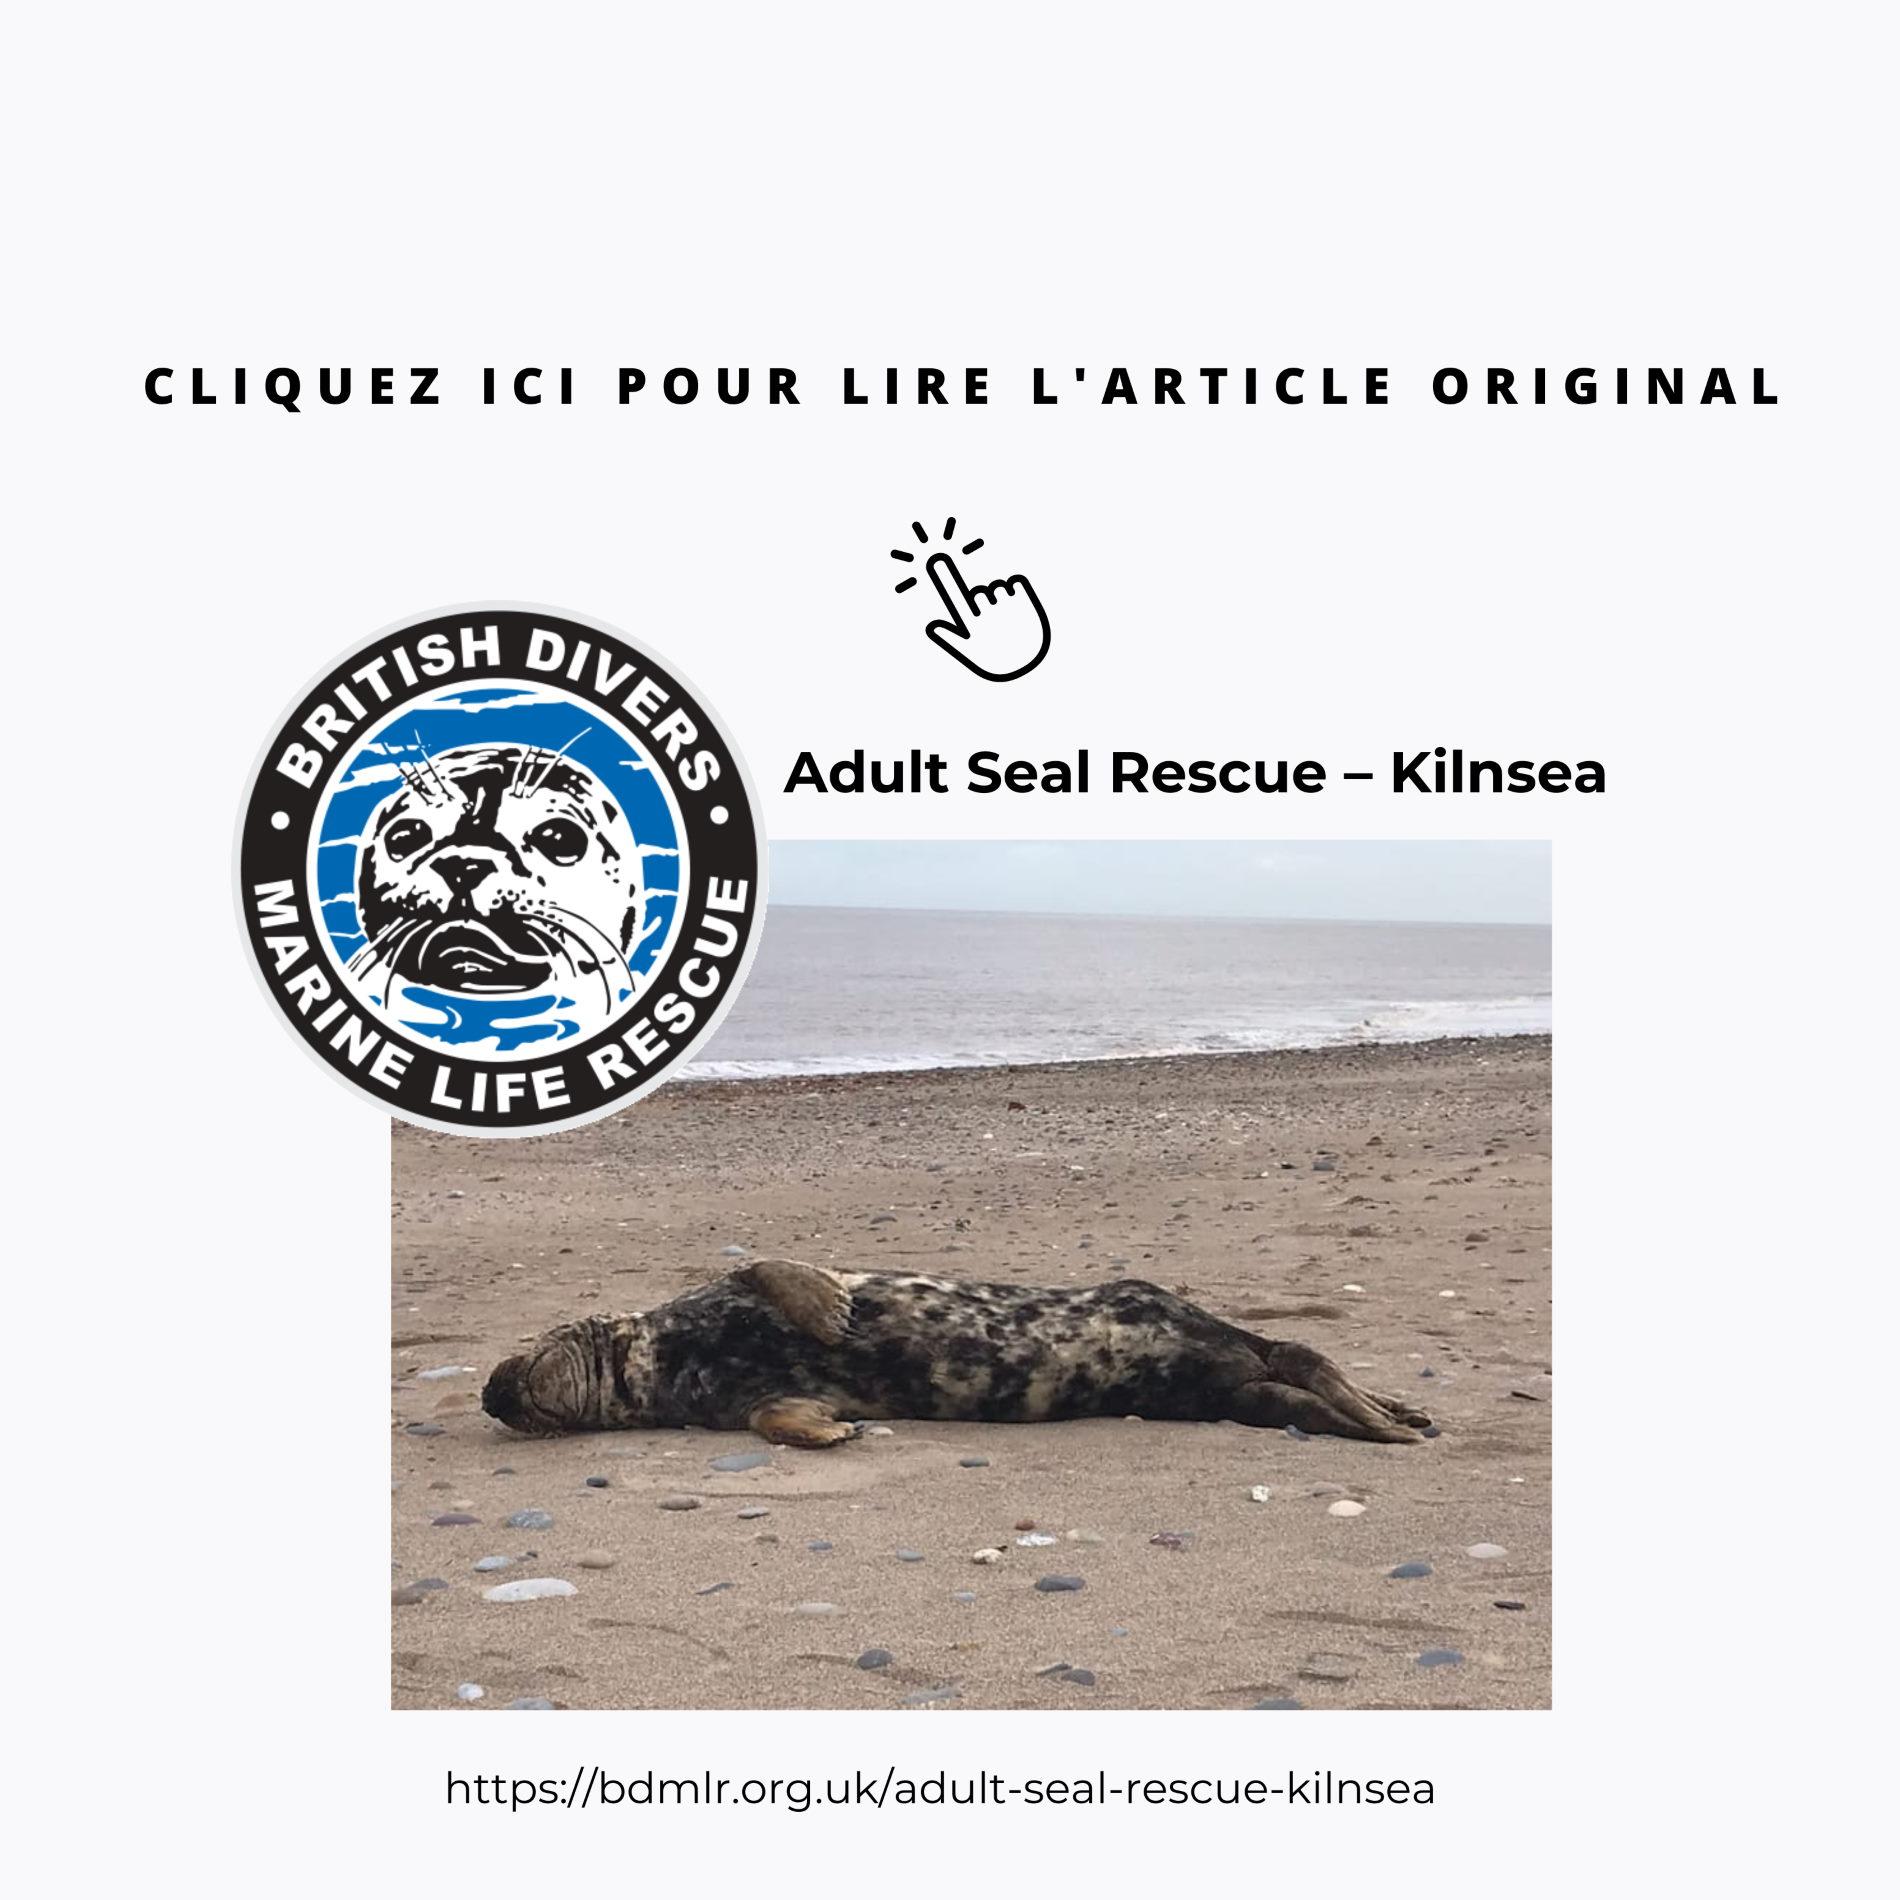 A Kilnsea, un phoque adulte échoué